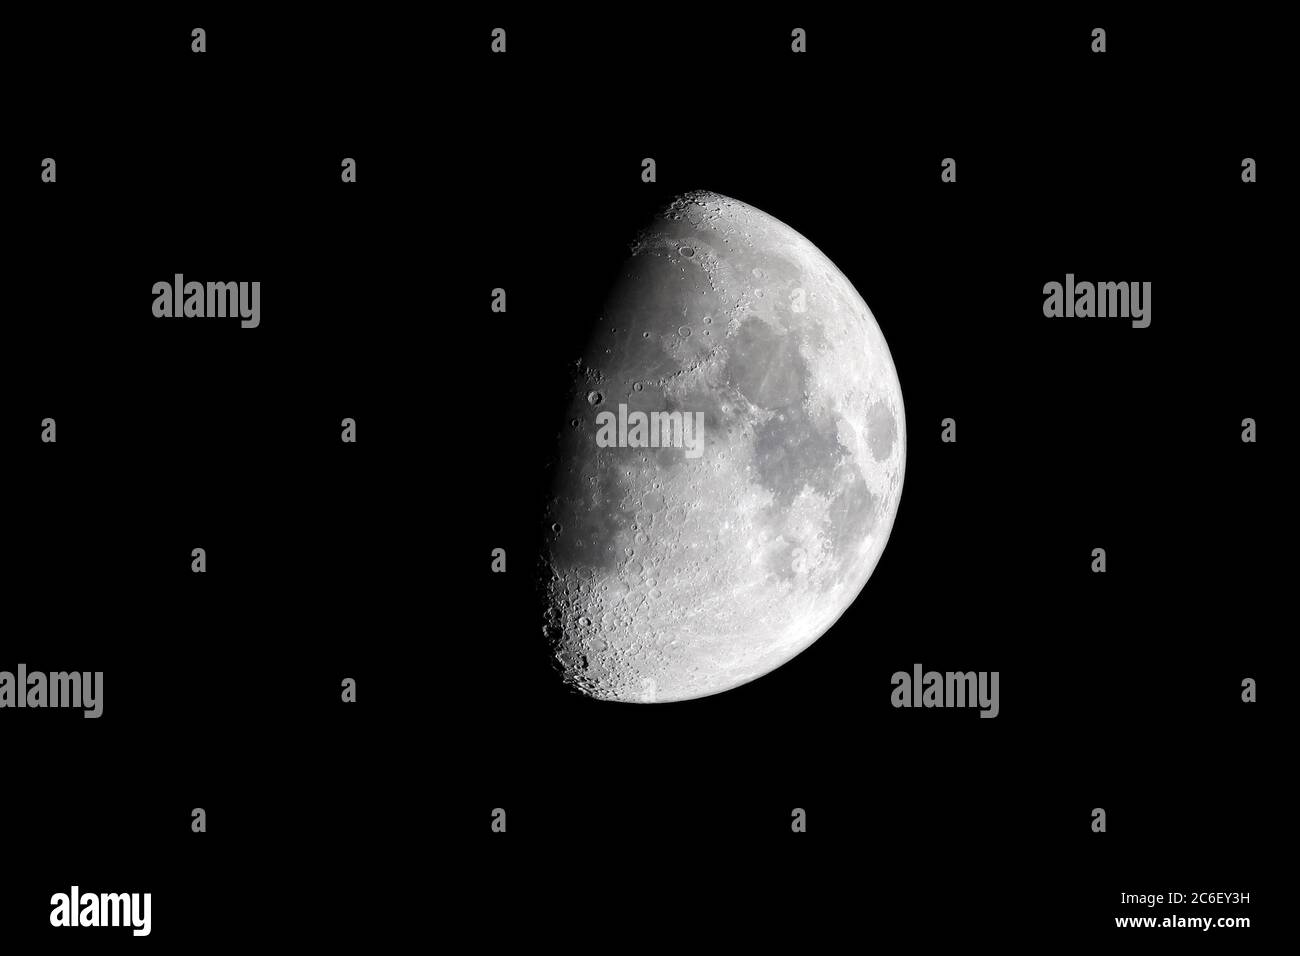 Wachender, dickbunter Mond (ca. 66% beleuchtet) bei Nacht, wie durch ein 80mm ED-APO Refraktorteleskop im Brennpunkt (600mm Brennweite) gesehen. Zwei Hauptmajor Stockfoto